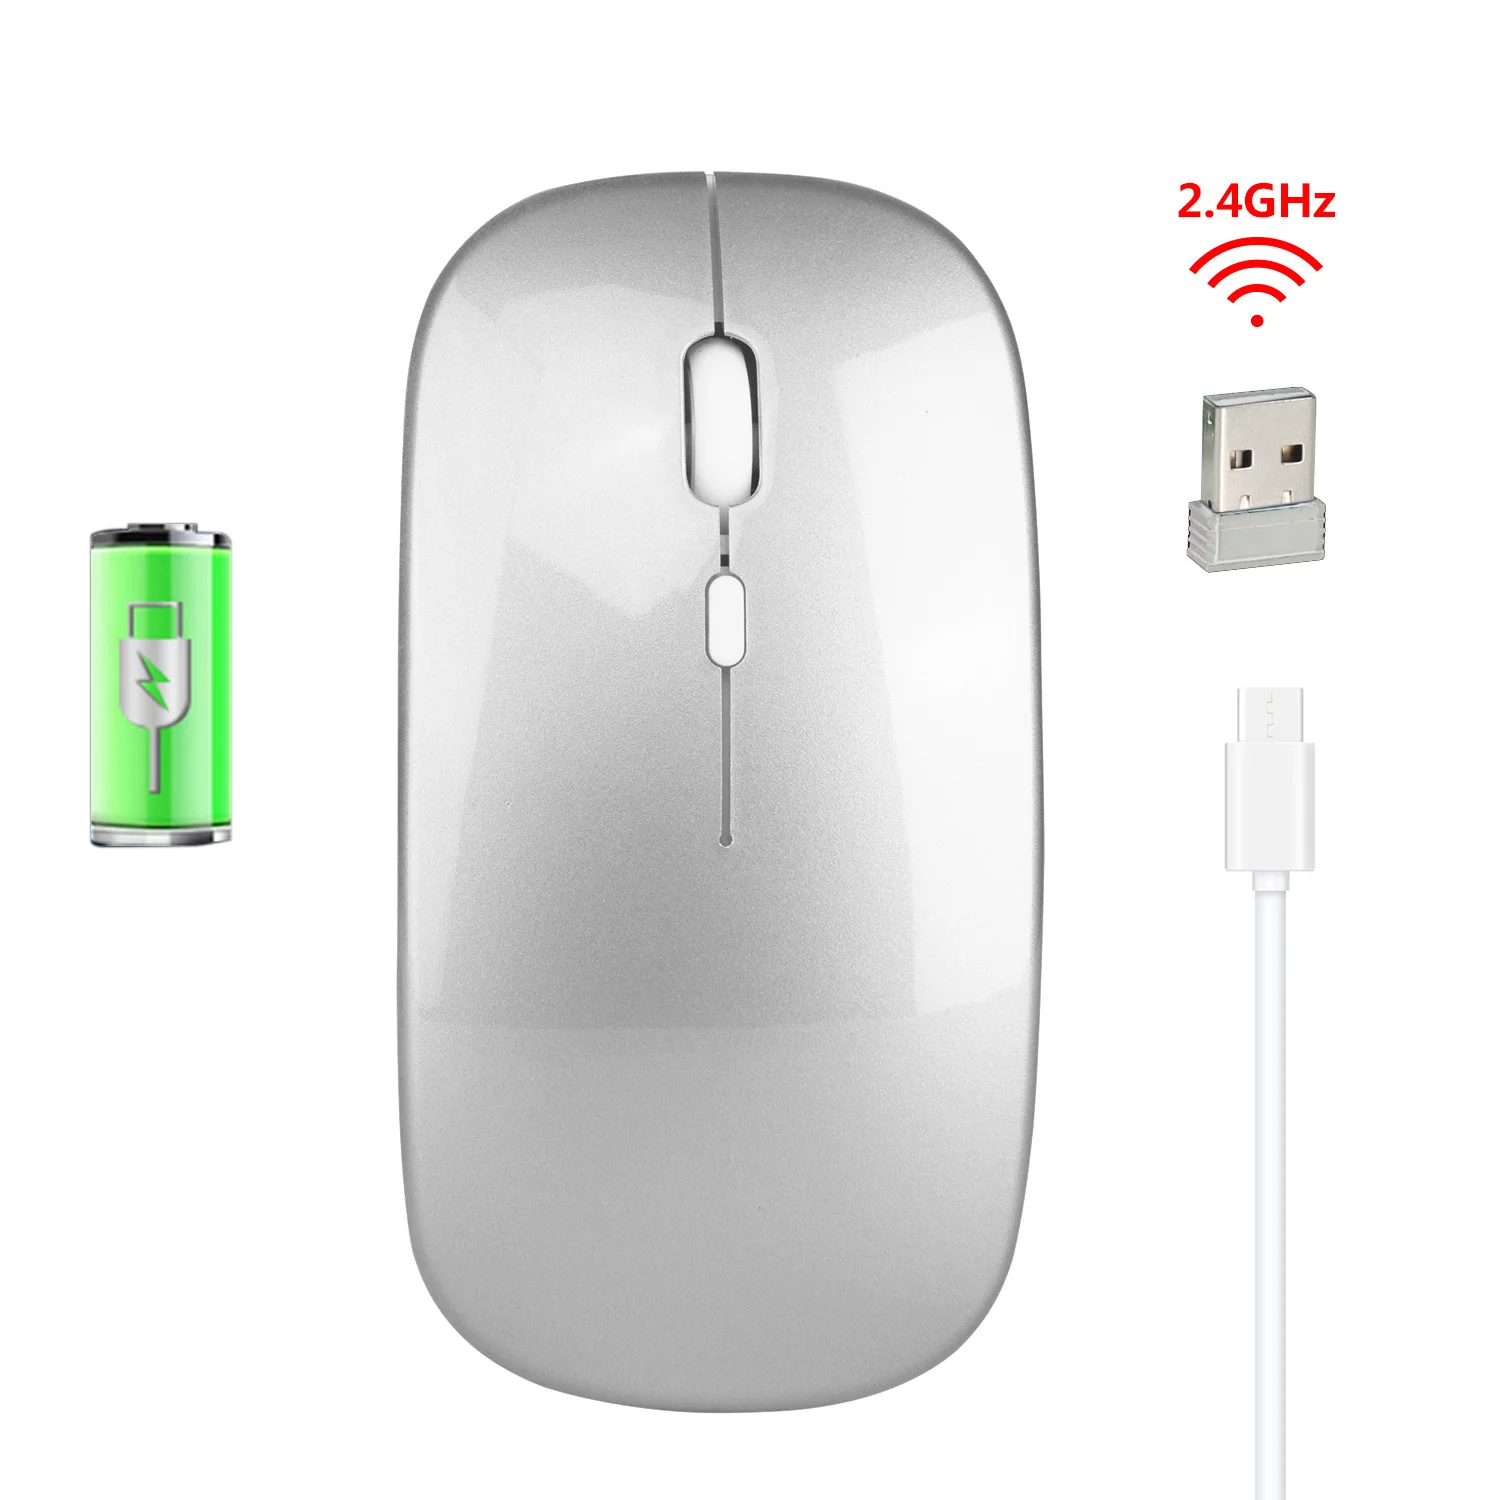 Беспроводная мышь io. Мышь Wireless Mouse 2.4g. Rechargeable 2.4g Wireless Mouse. Мышка беспроводная Mouse g185. Мышь оптическая беспроводная Wireless Optical Mouse AVT dw200.